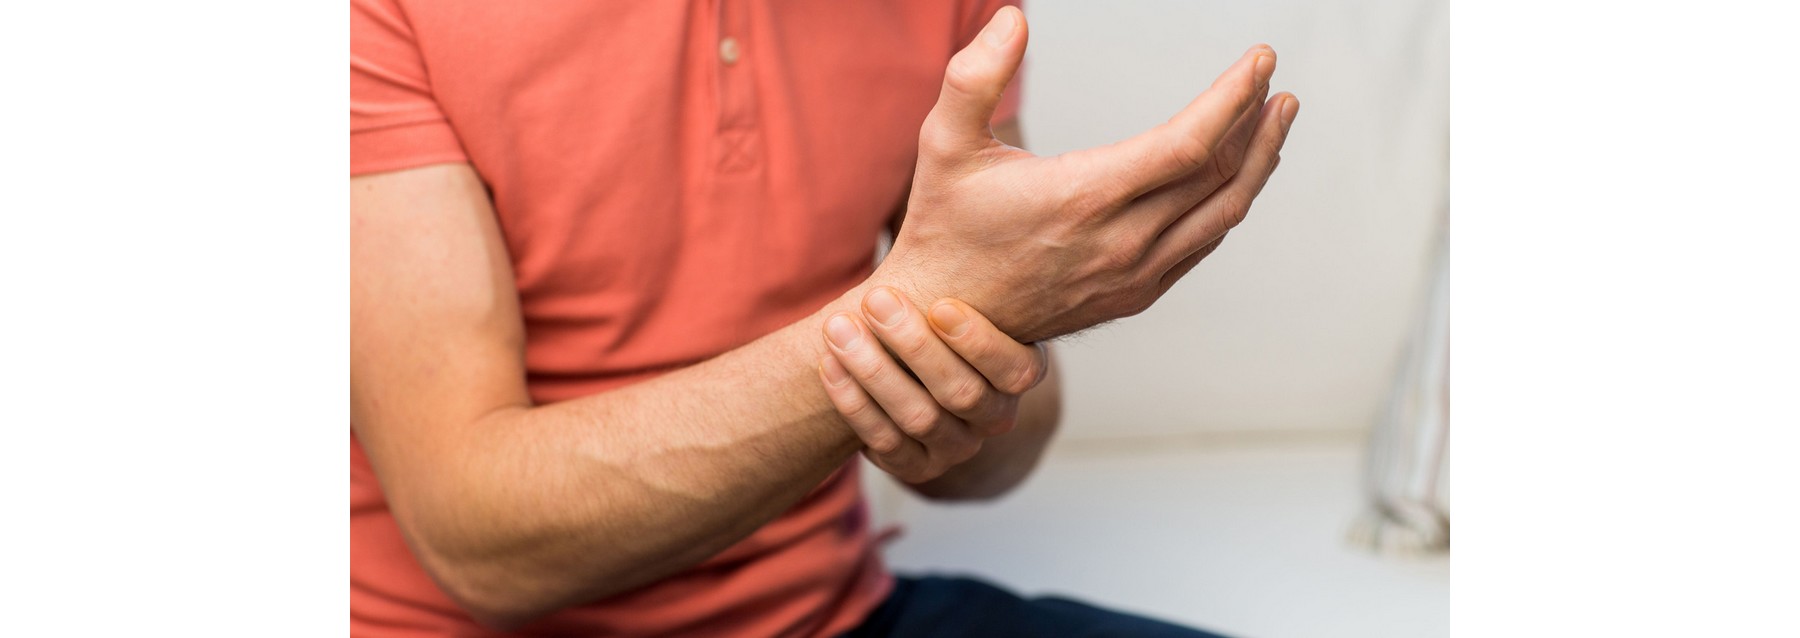 Les indications du Dr Clark lors de douleurs inflammatoires: arthrite, polyarthrite rhumatoïde, fibromyalgie, bursite et goutte